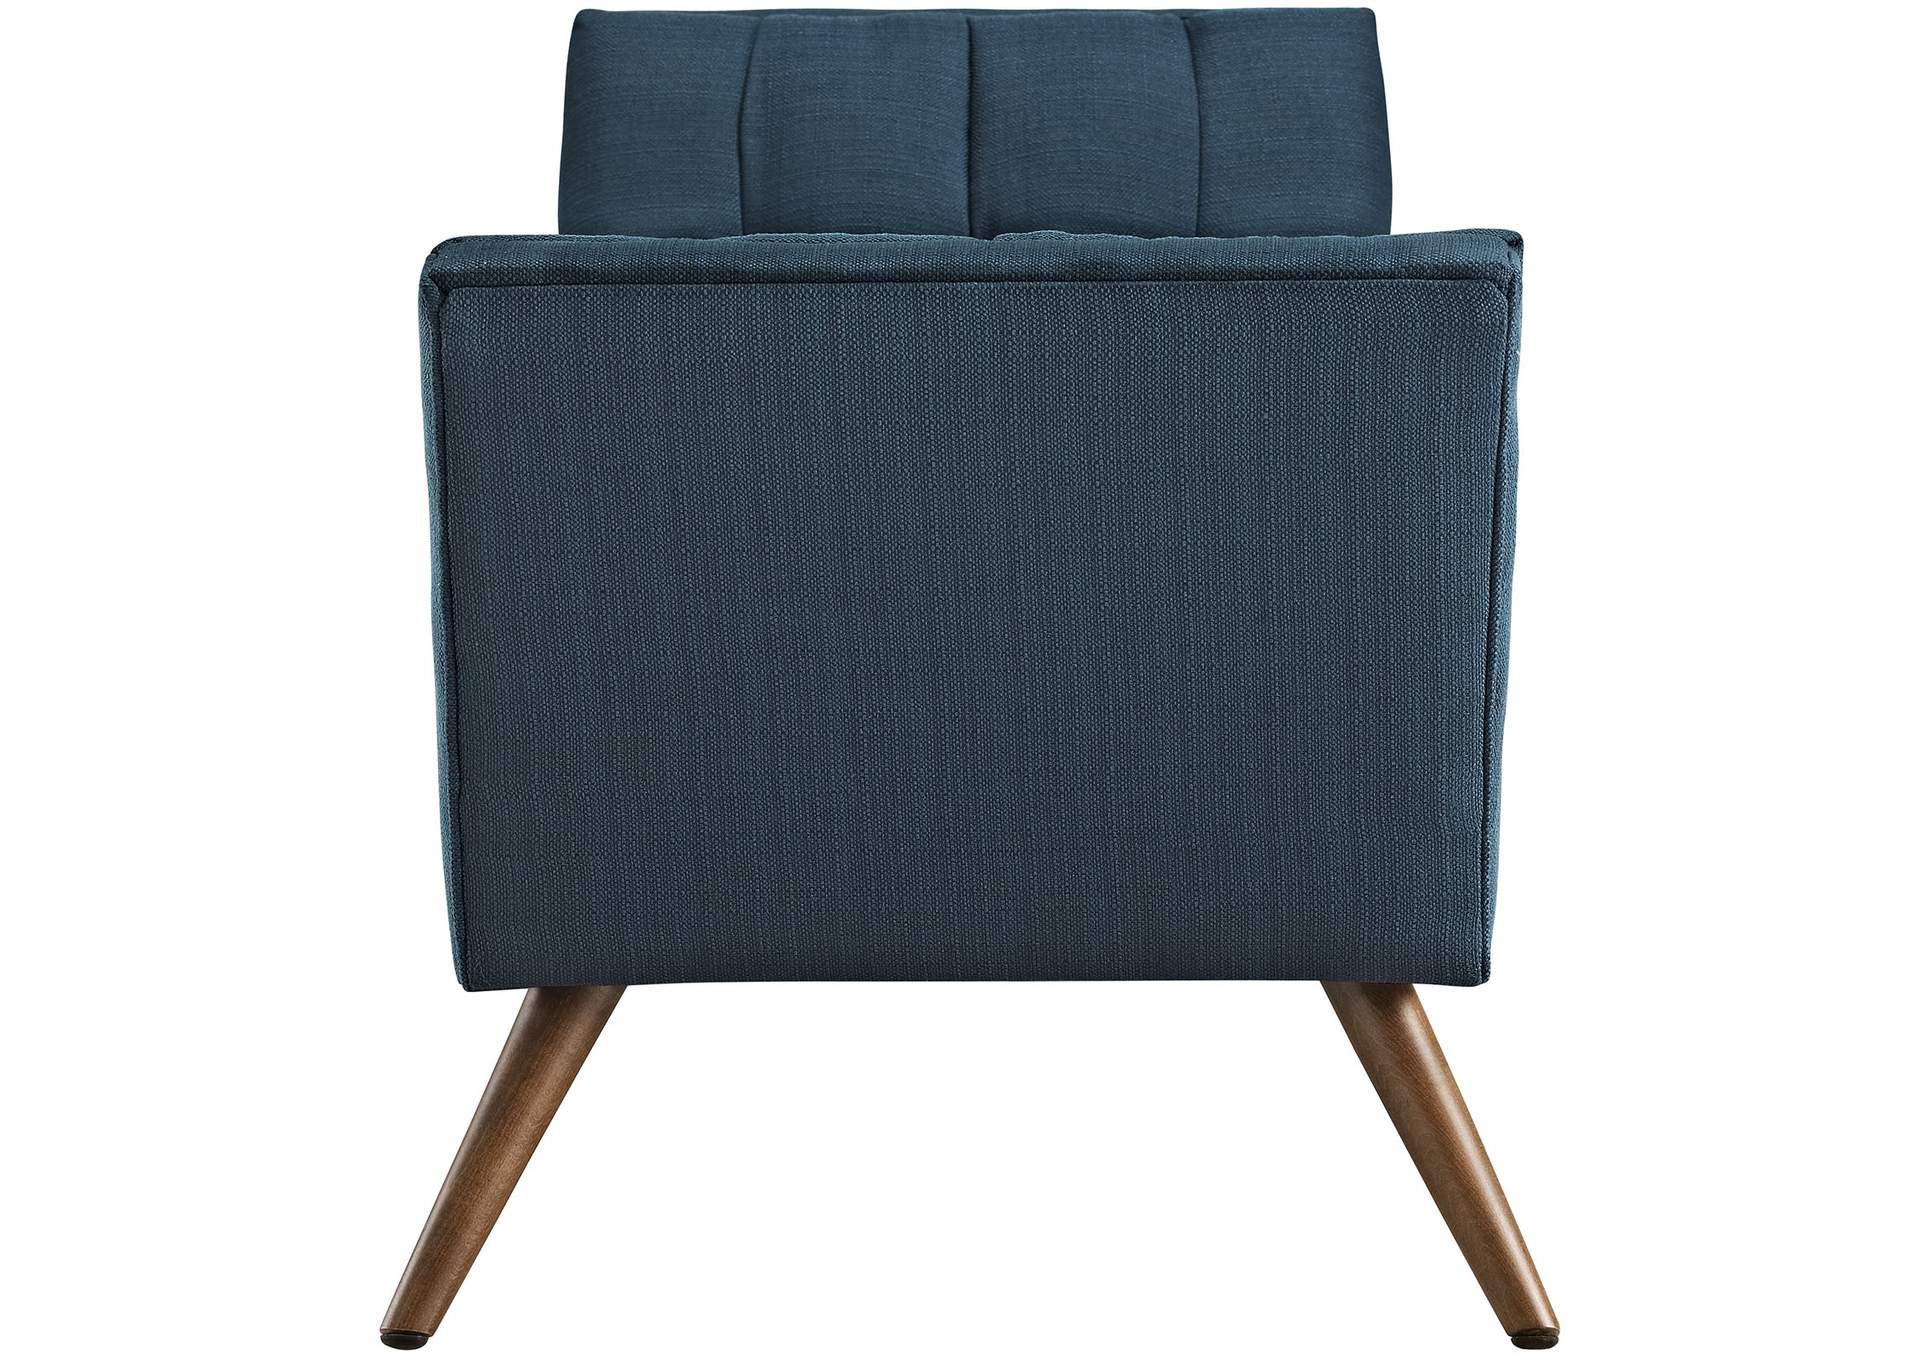 Azure Response Medium Upholstered Fabric Bench,Modway